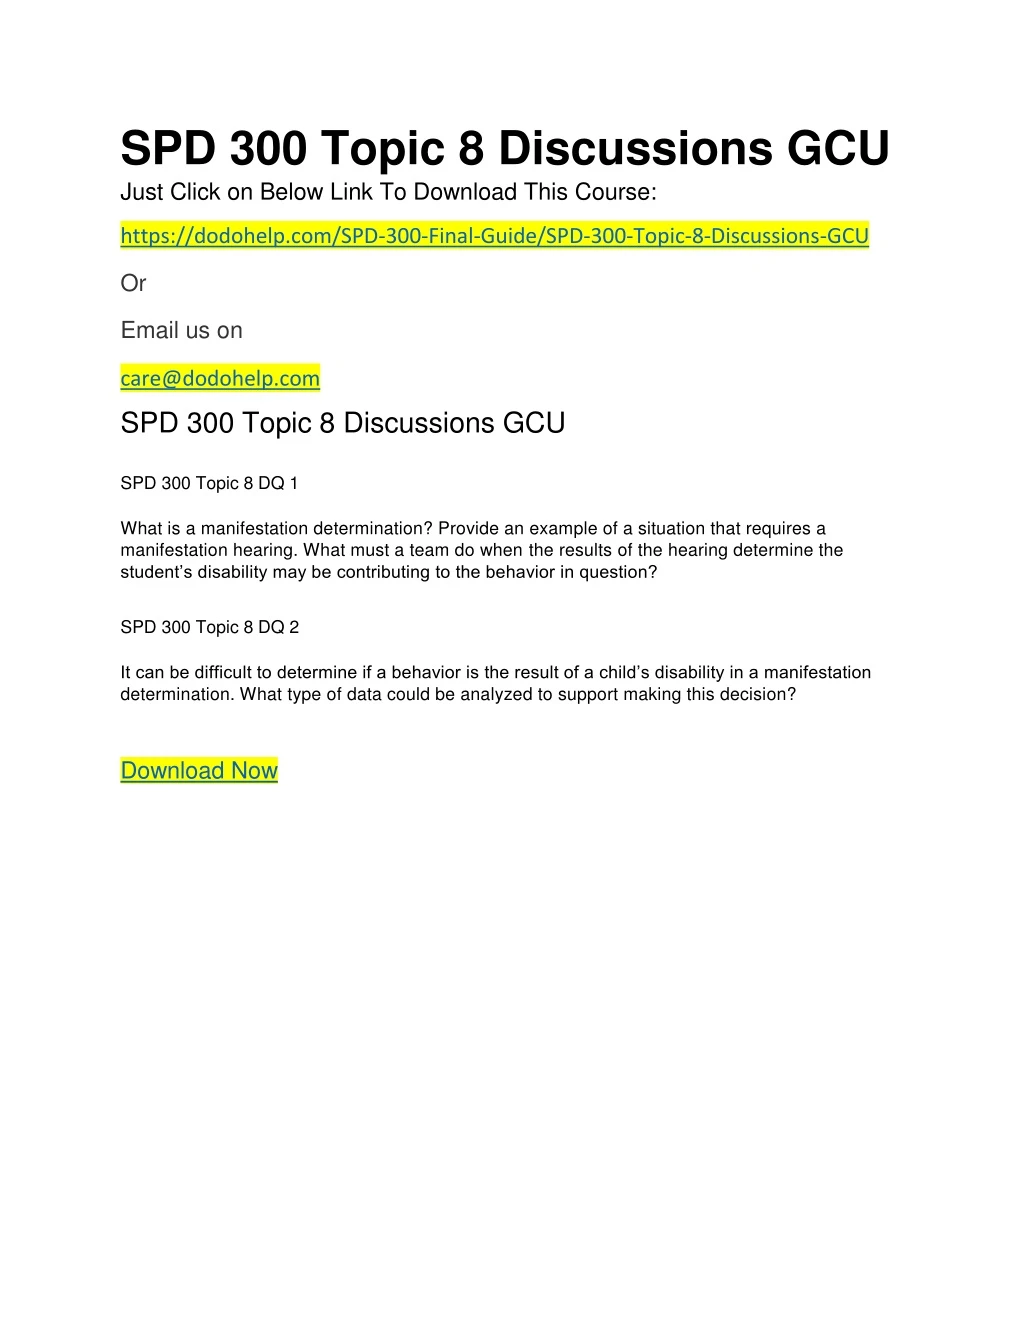 spd 300 topic 8 discussions gcu just click